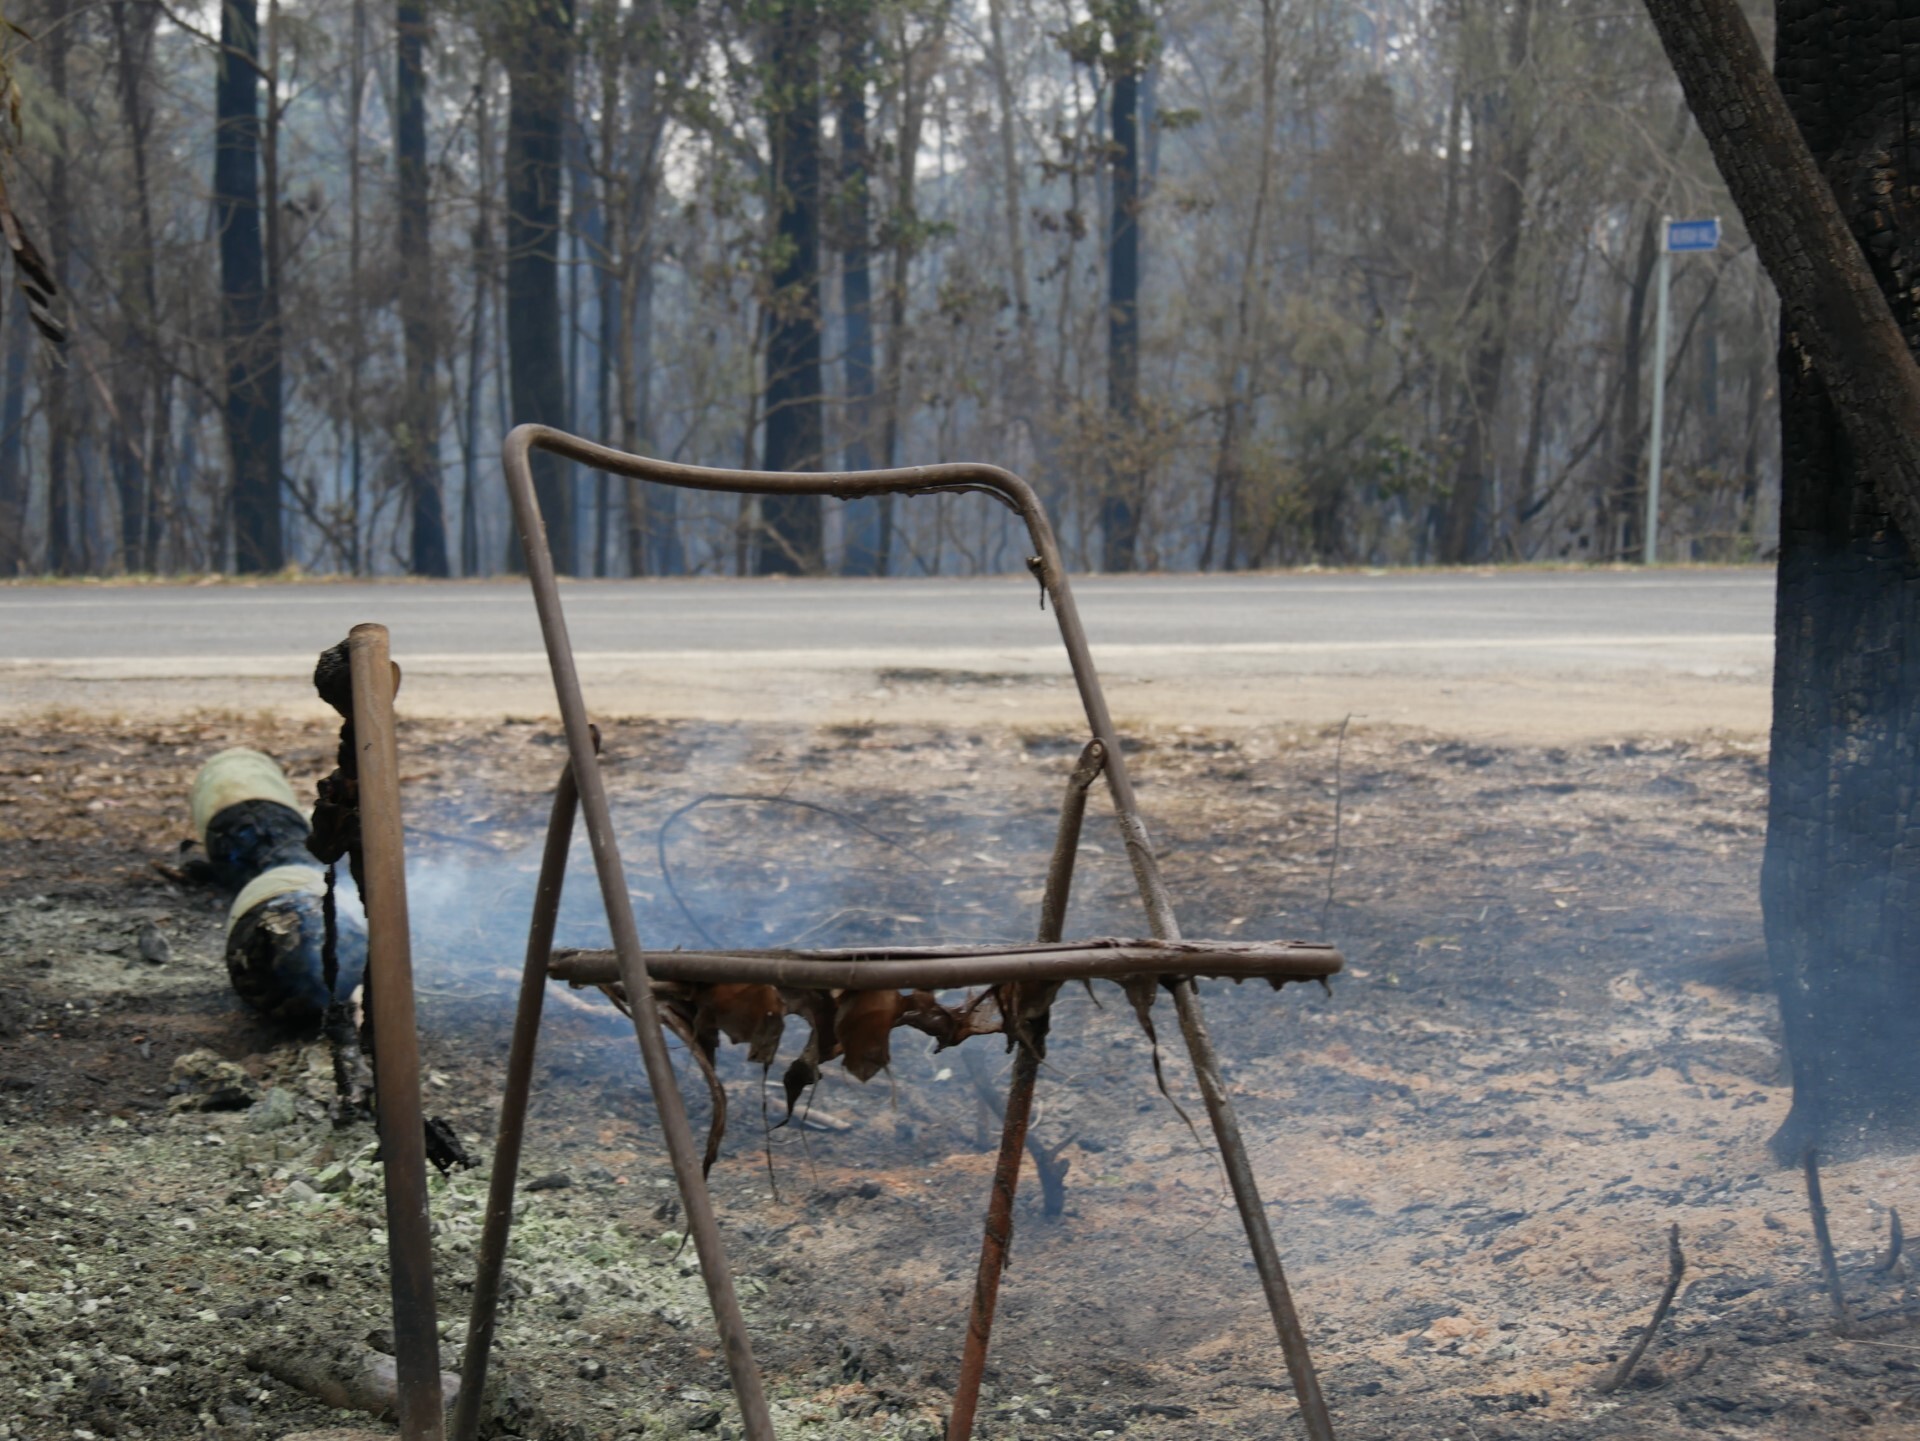 Burnt chair in a paddock still smoldering. 